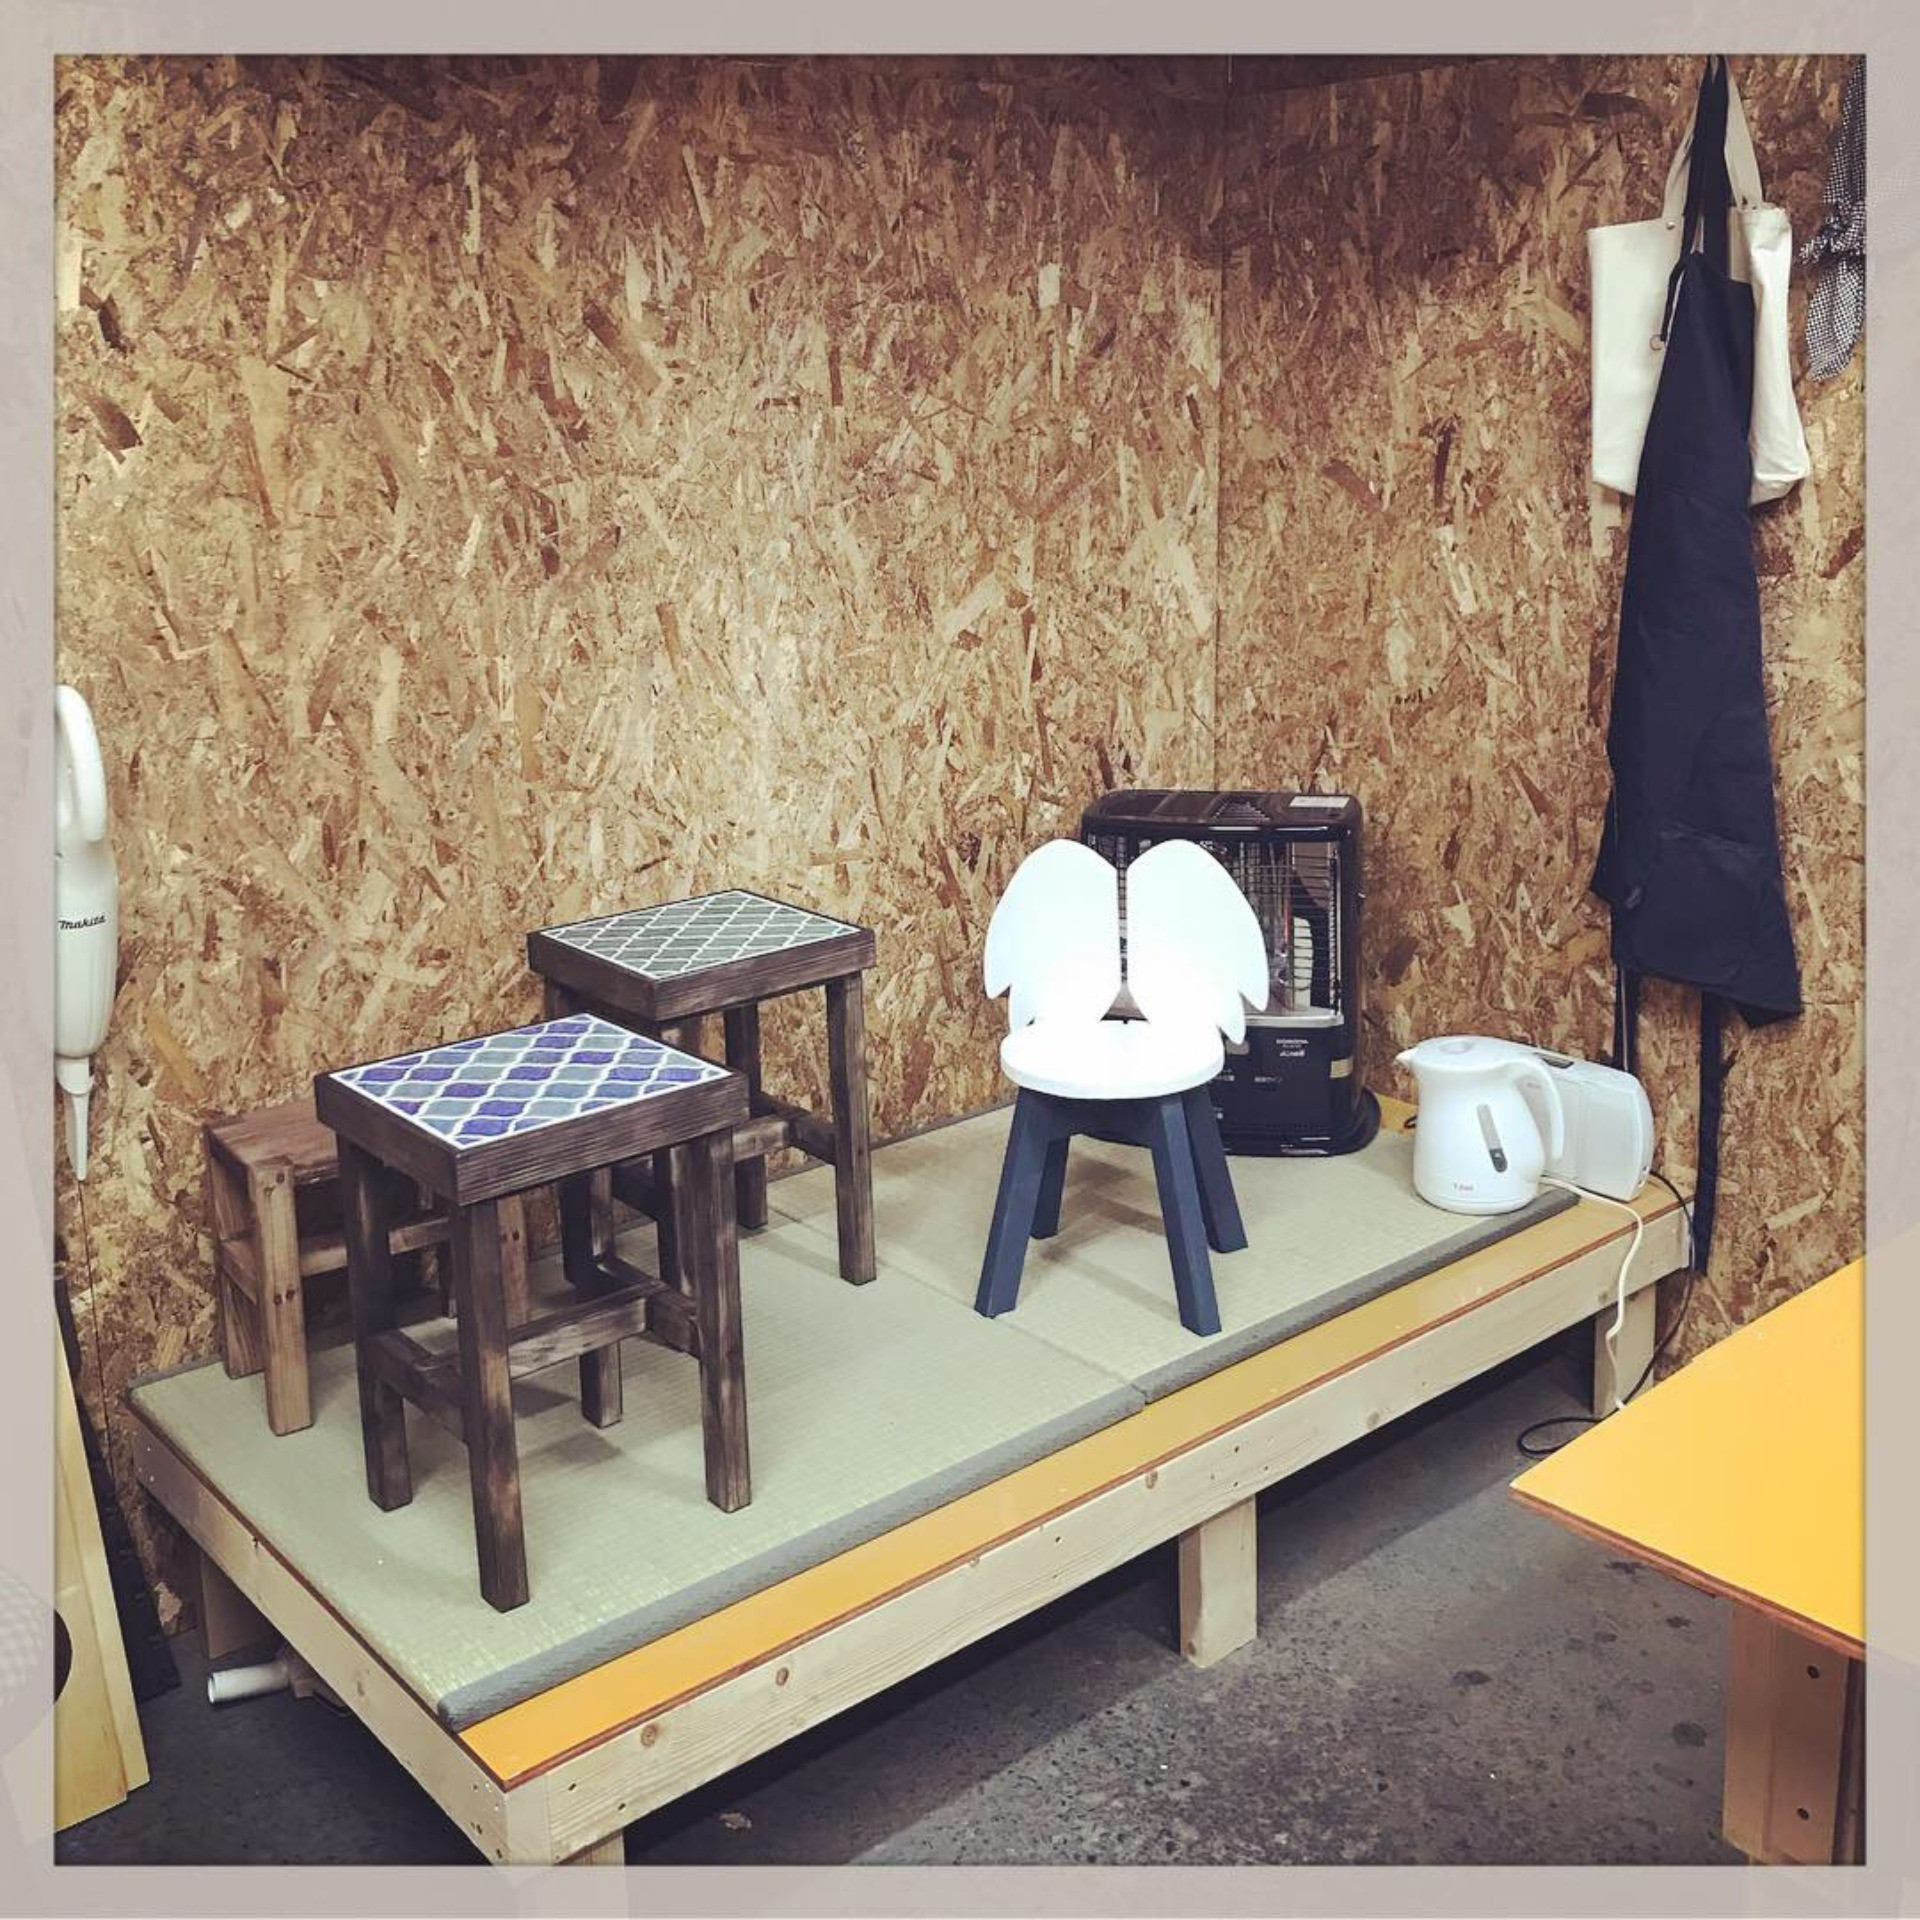 オーダーメイドで製作する椅子を提供するショップのブログ